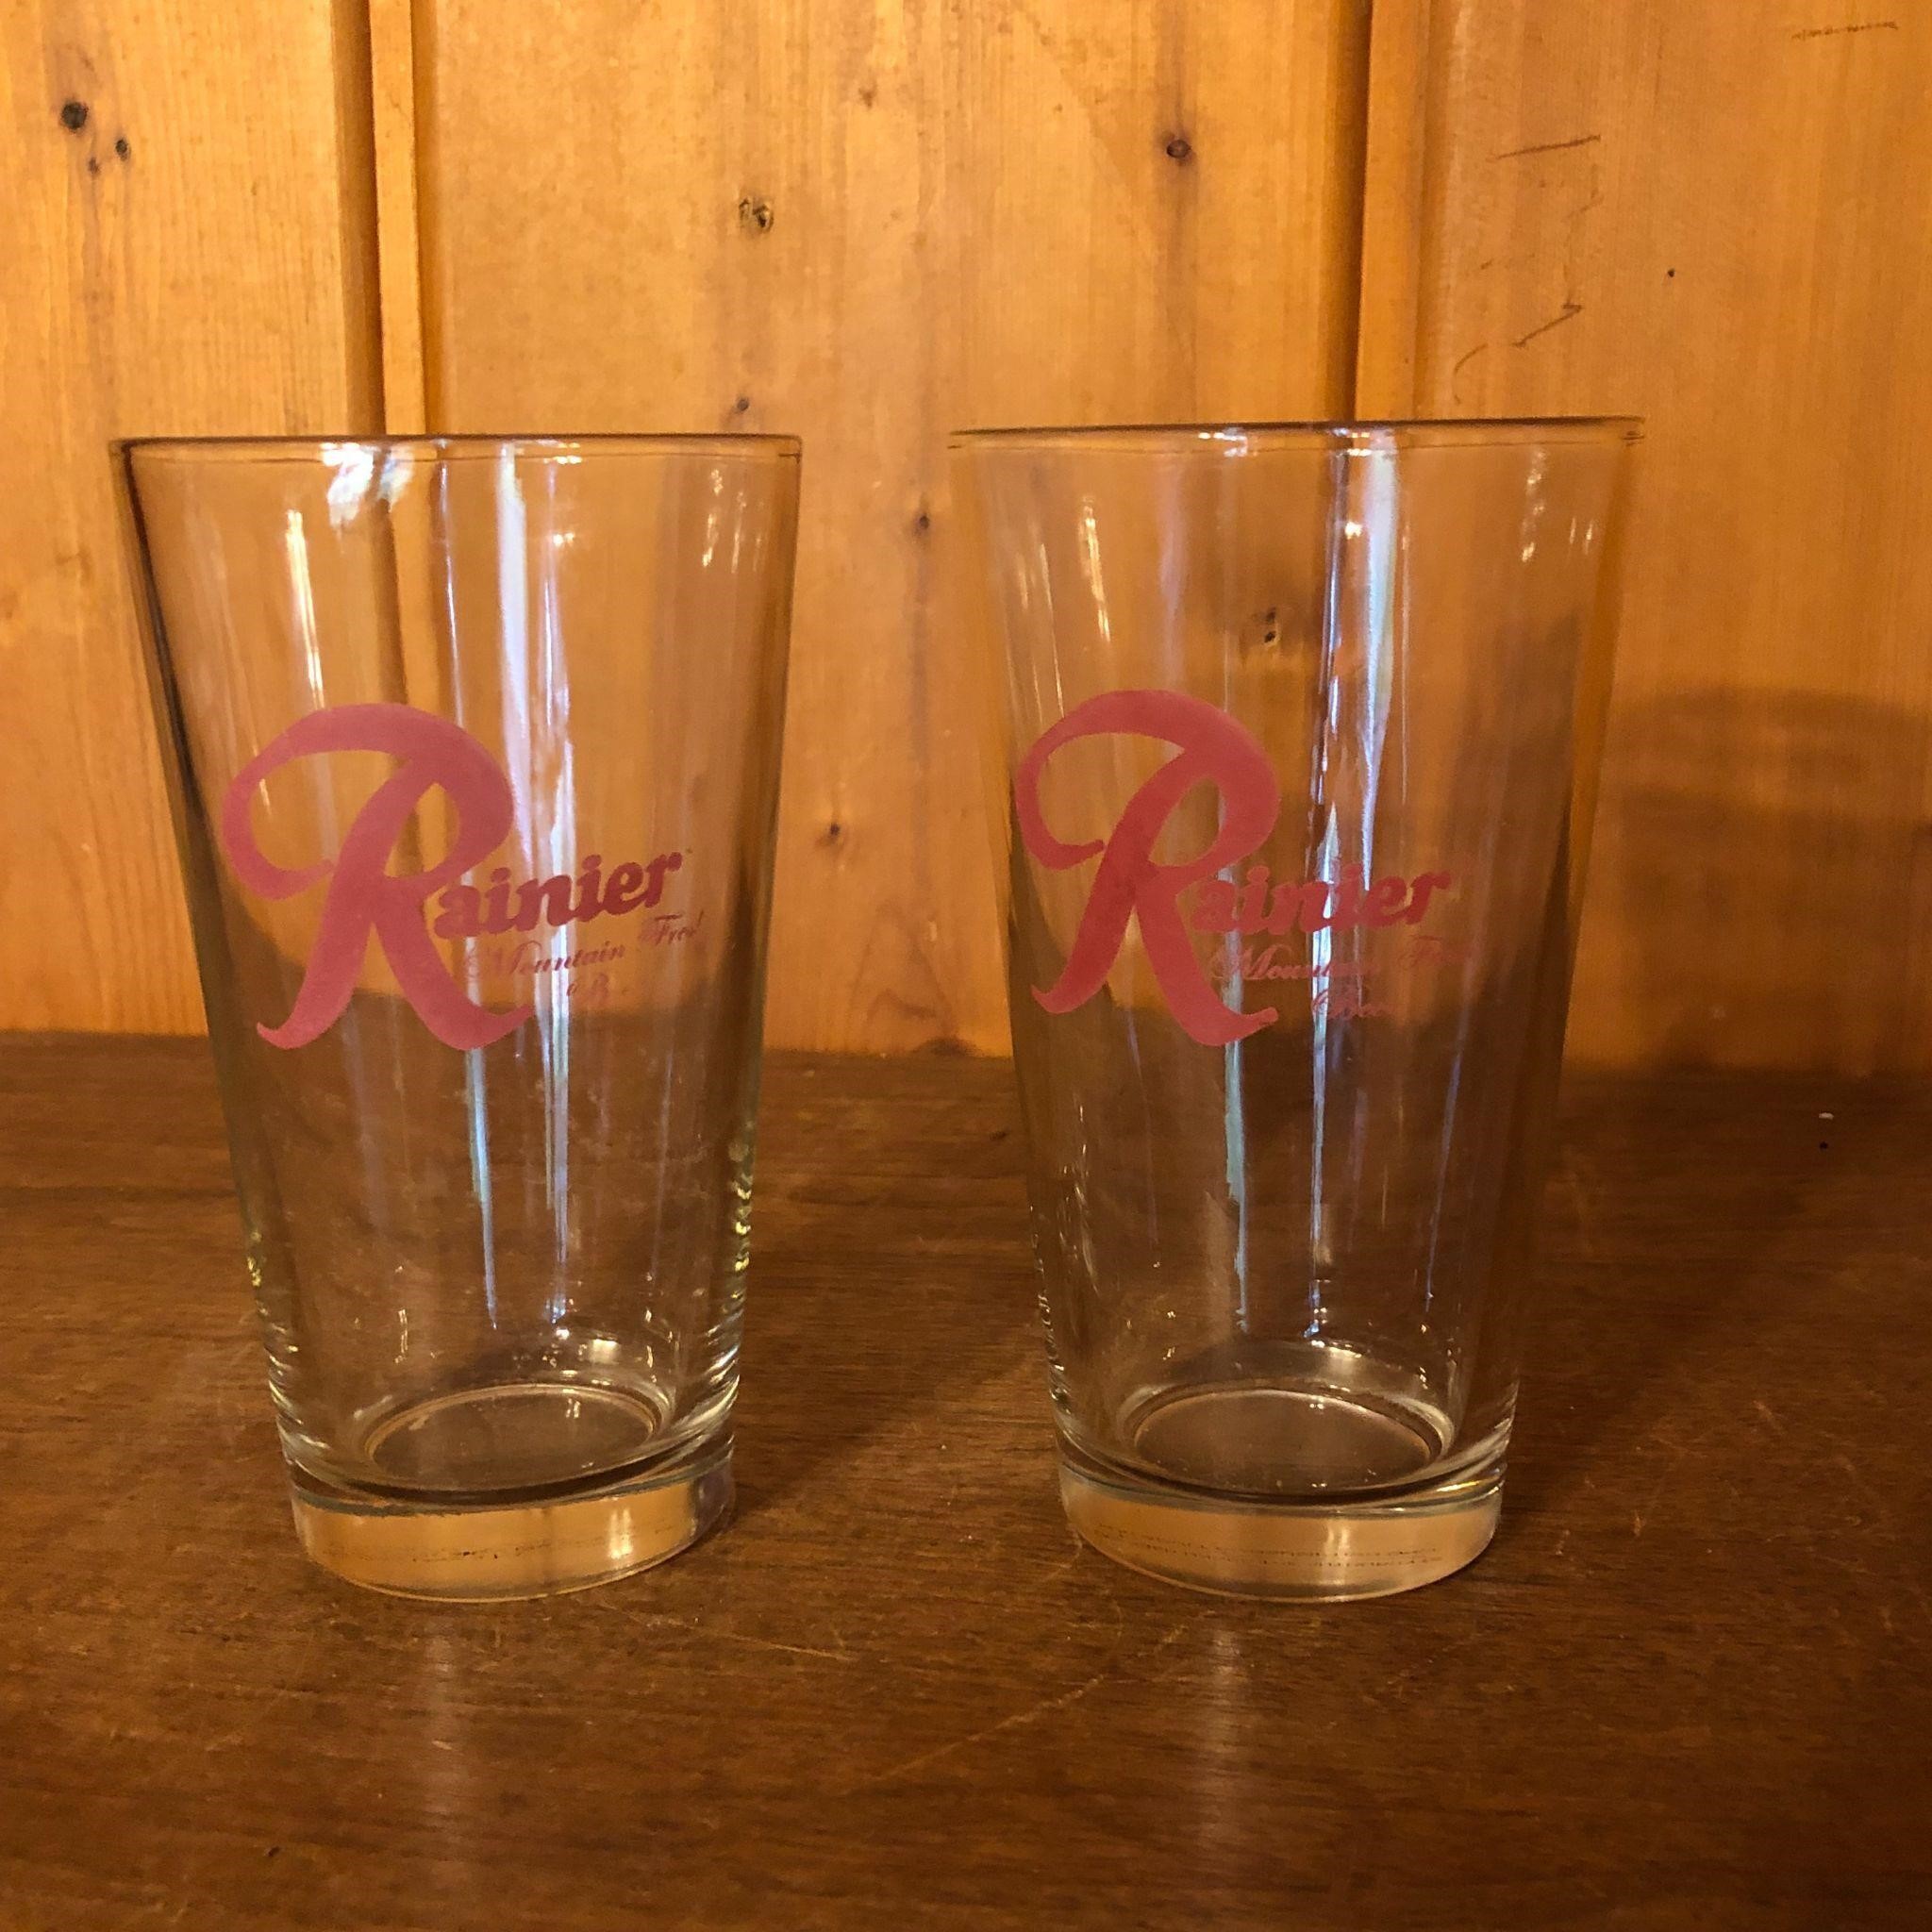 Ranier Mountain Fresh Beer Advertising Glasses